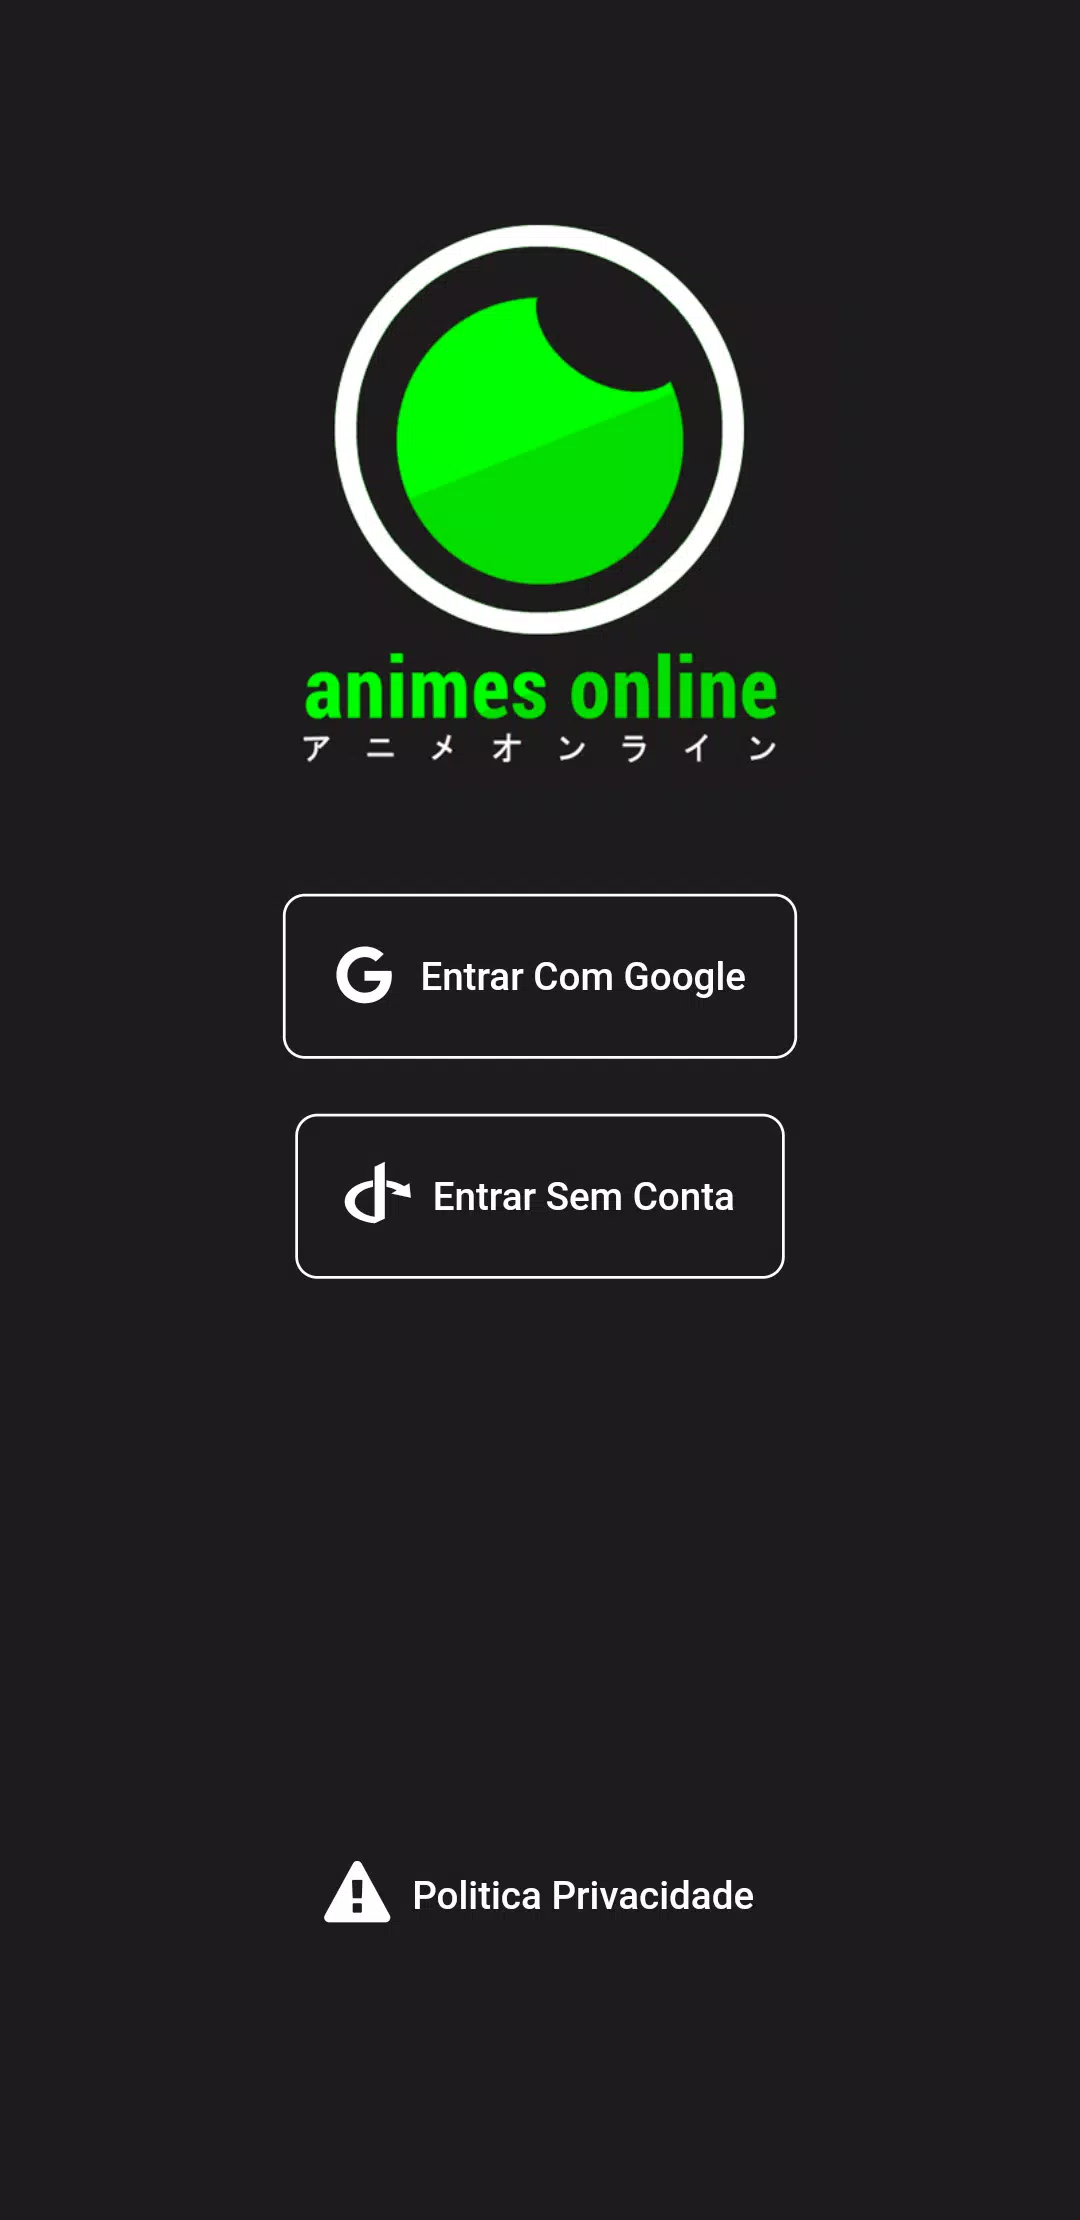 Animes Online Brasil